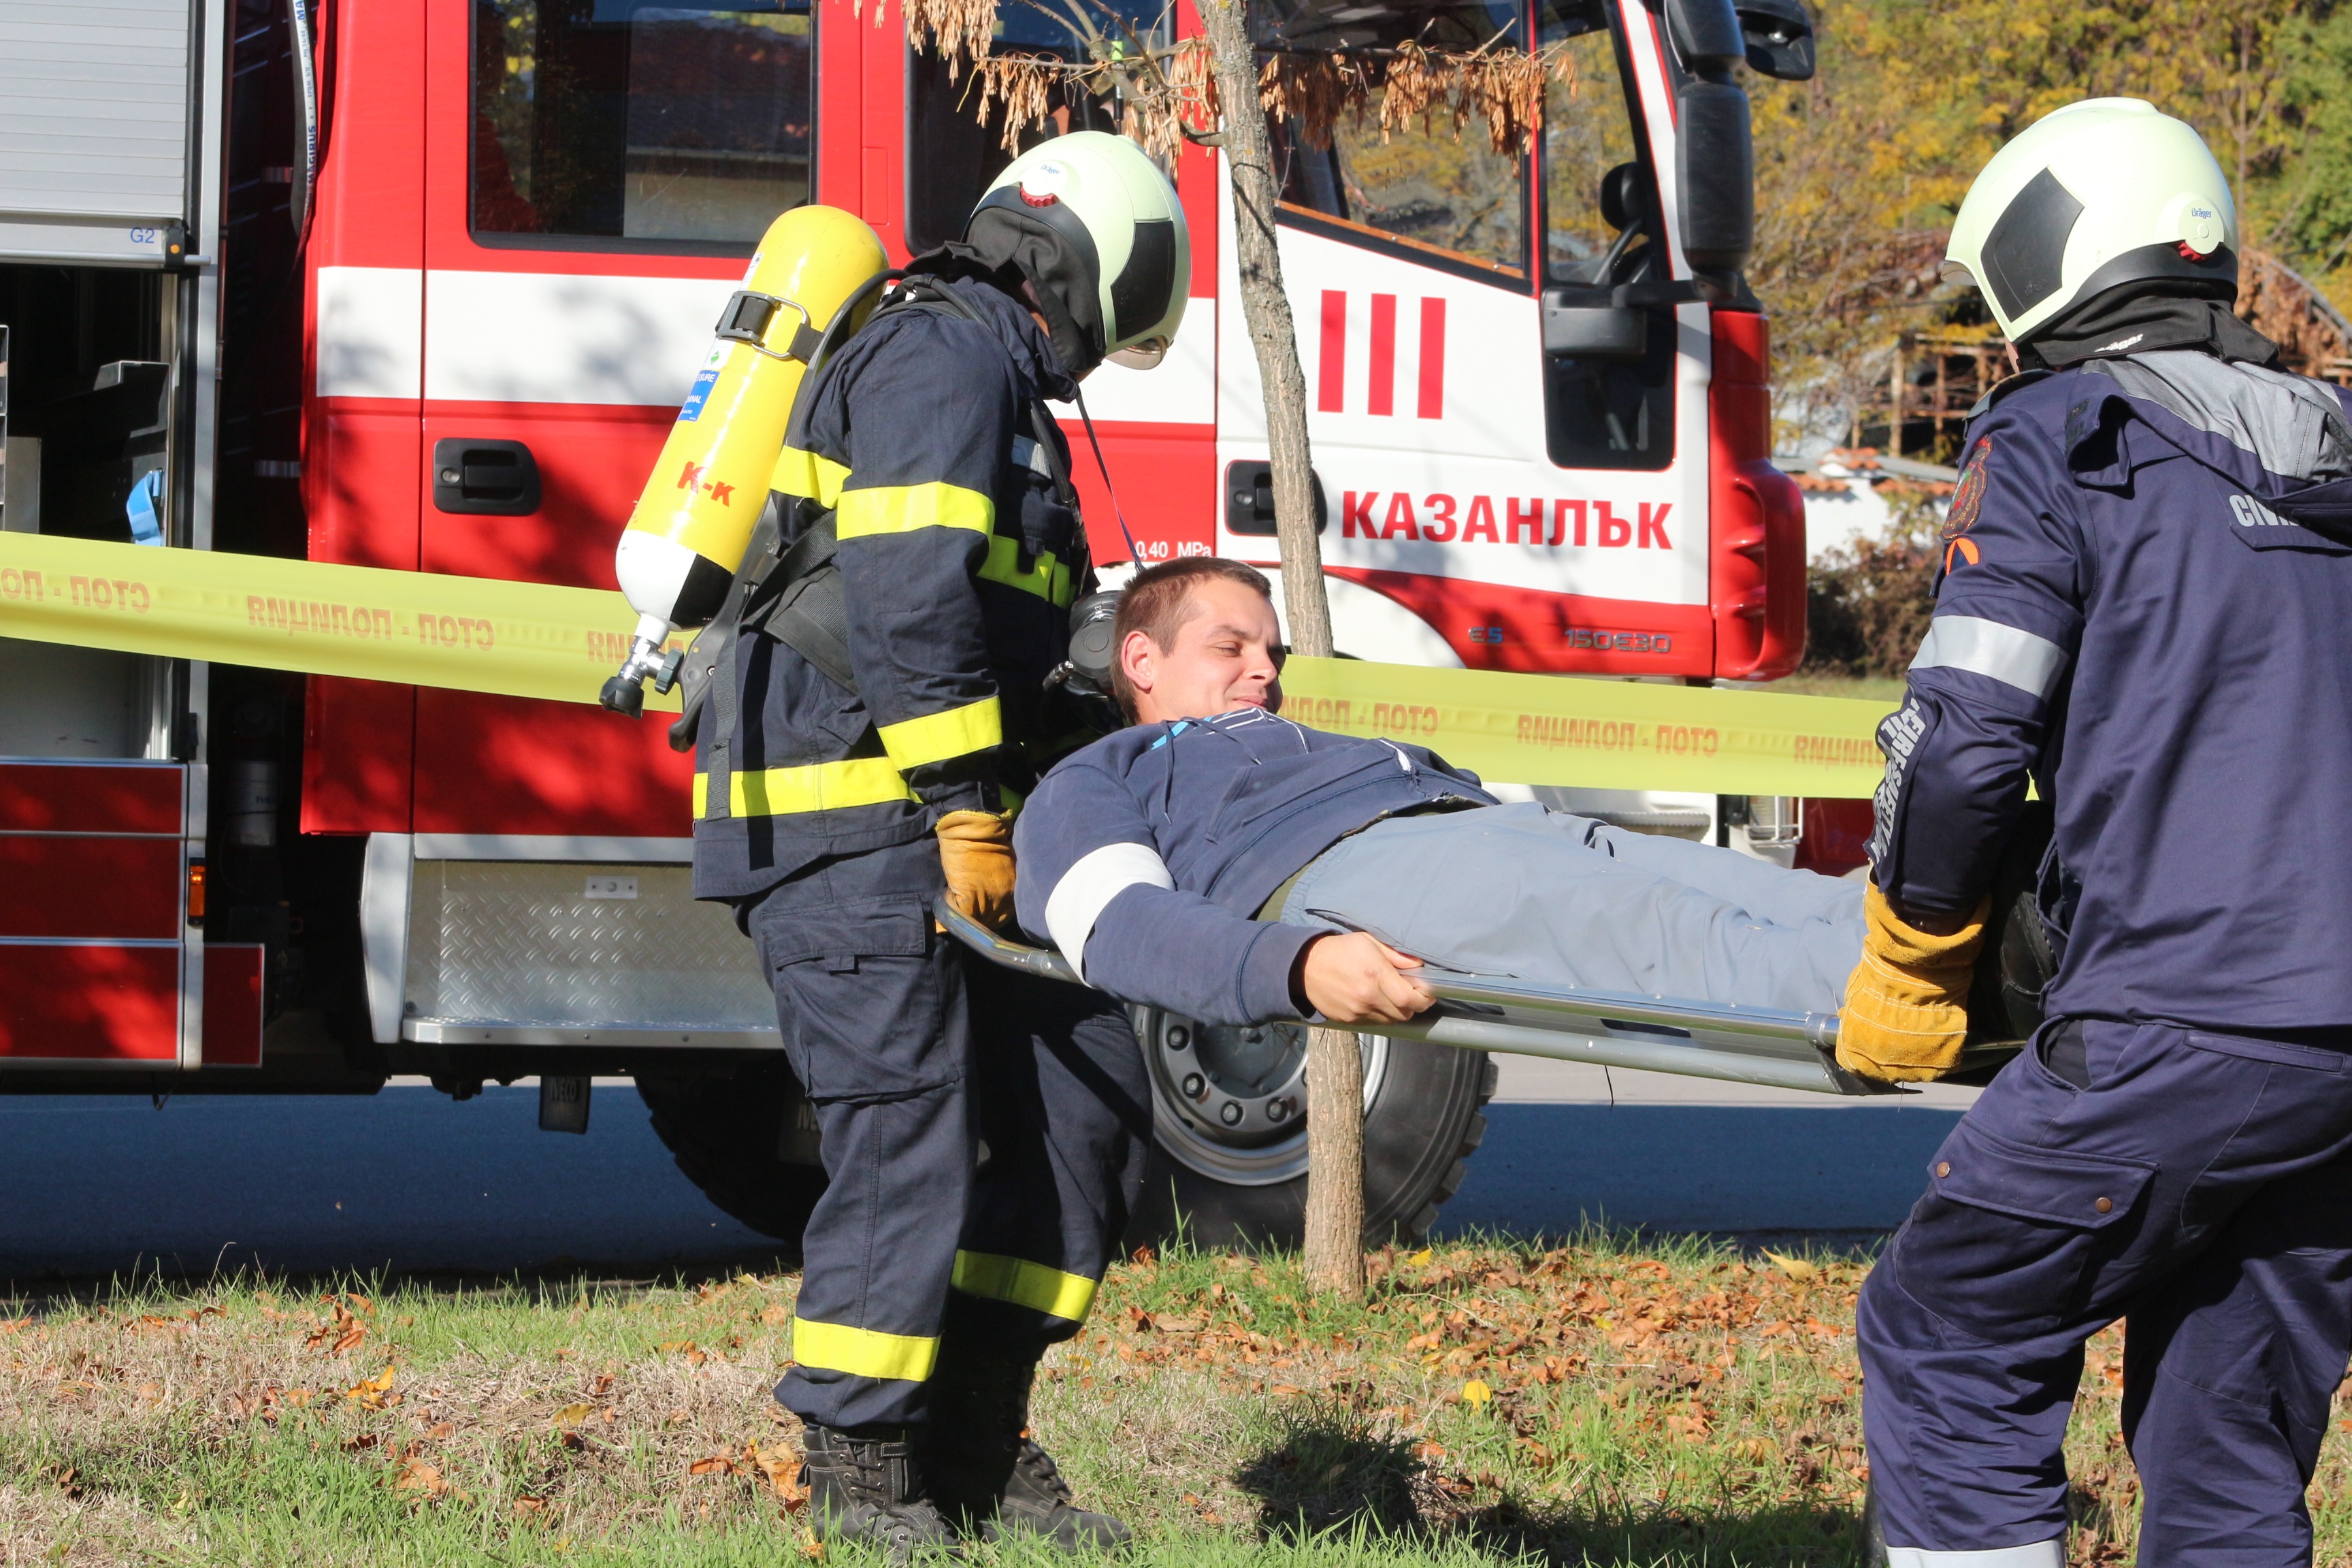 Съвместно учение между полиция, пожарна и военни се проведе в Казанлък. Темата бе терористичен акт на градския стадион.